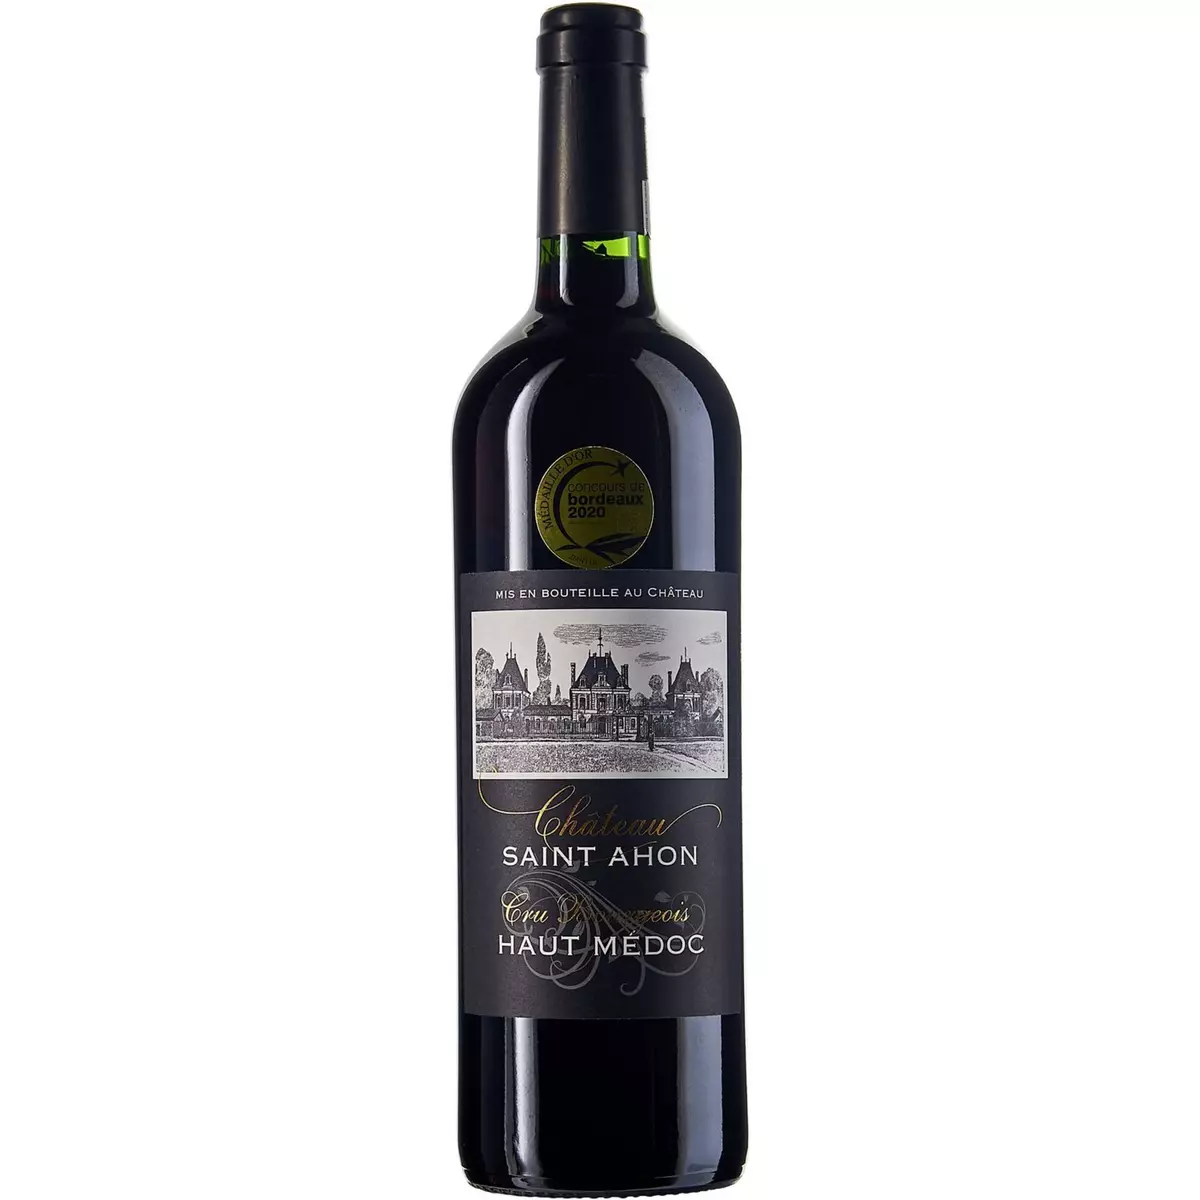 Vin rouge AOP Haut-Médoc Château Saint Ahon cru bourgeois HVE 2018 75cl